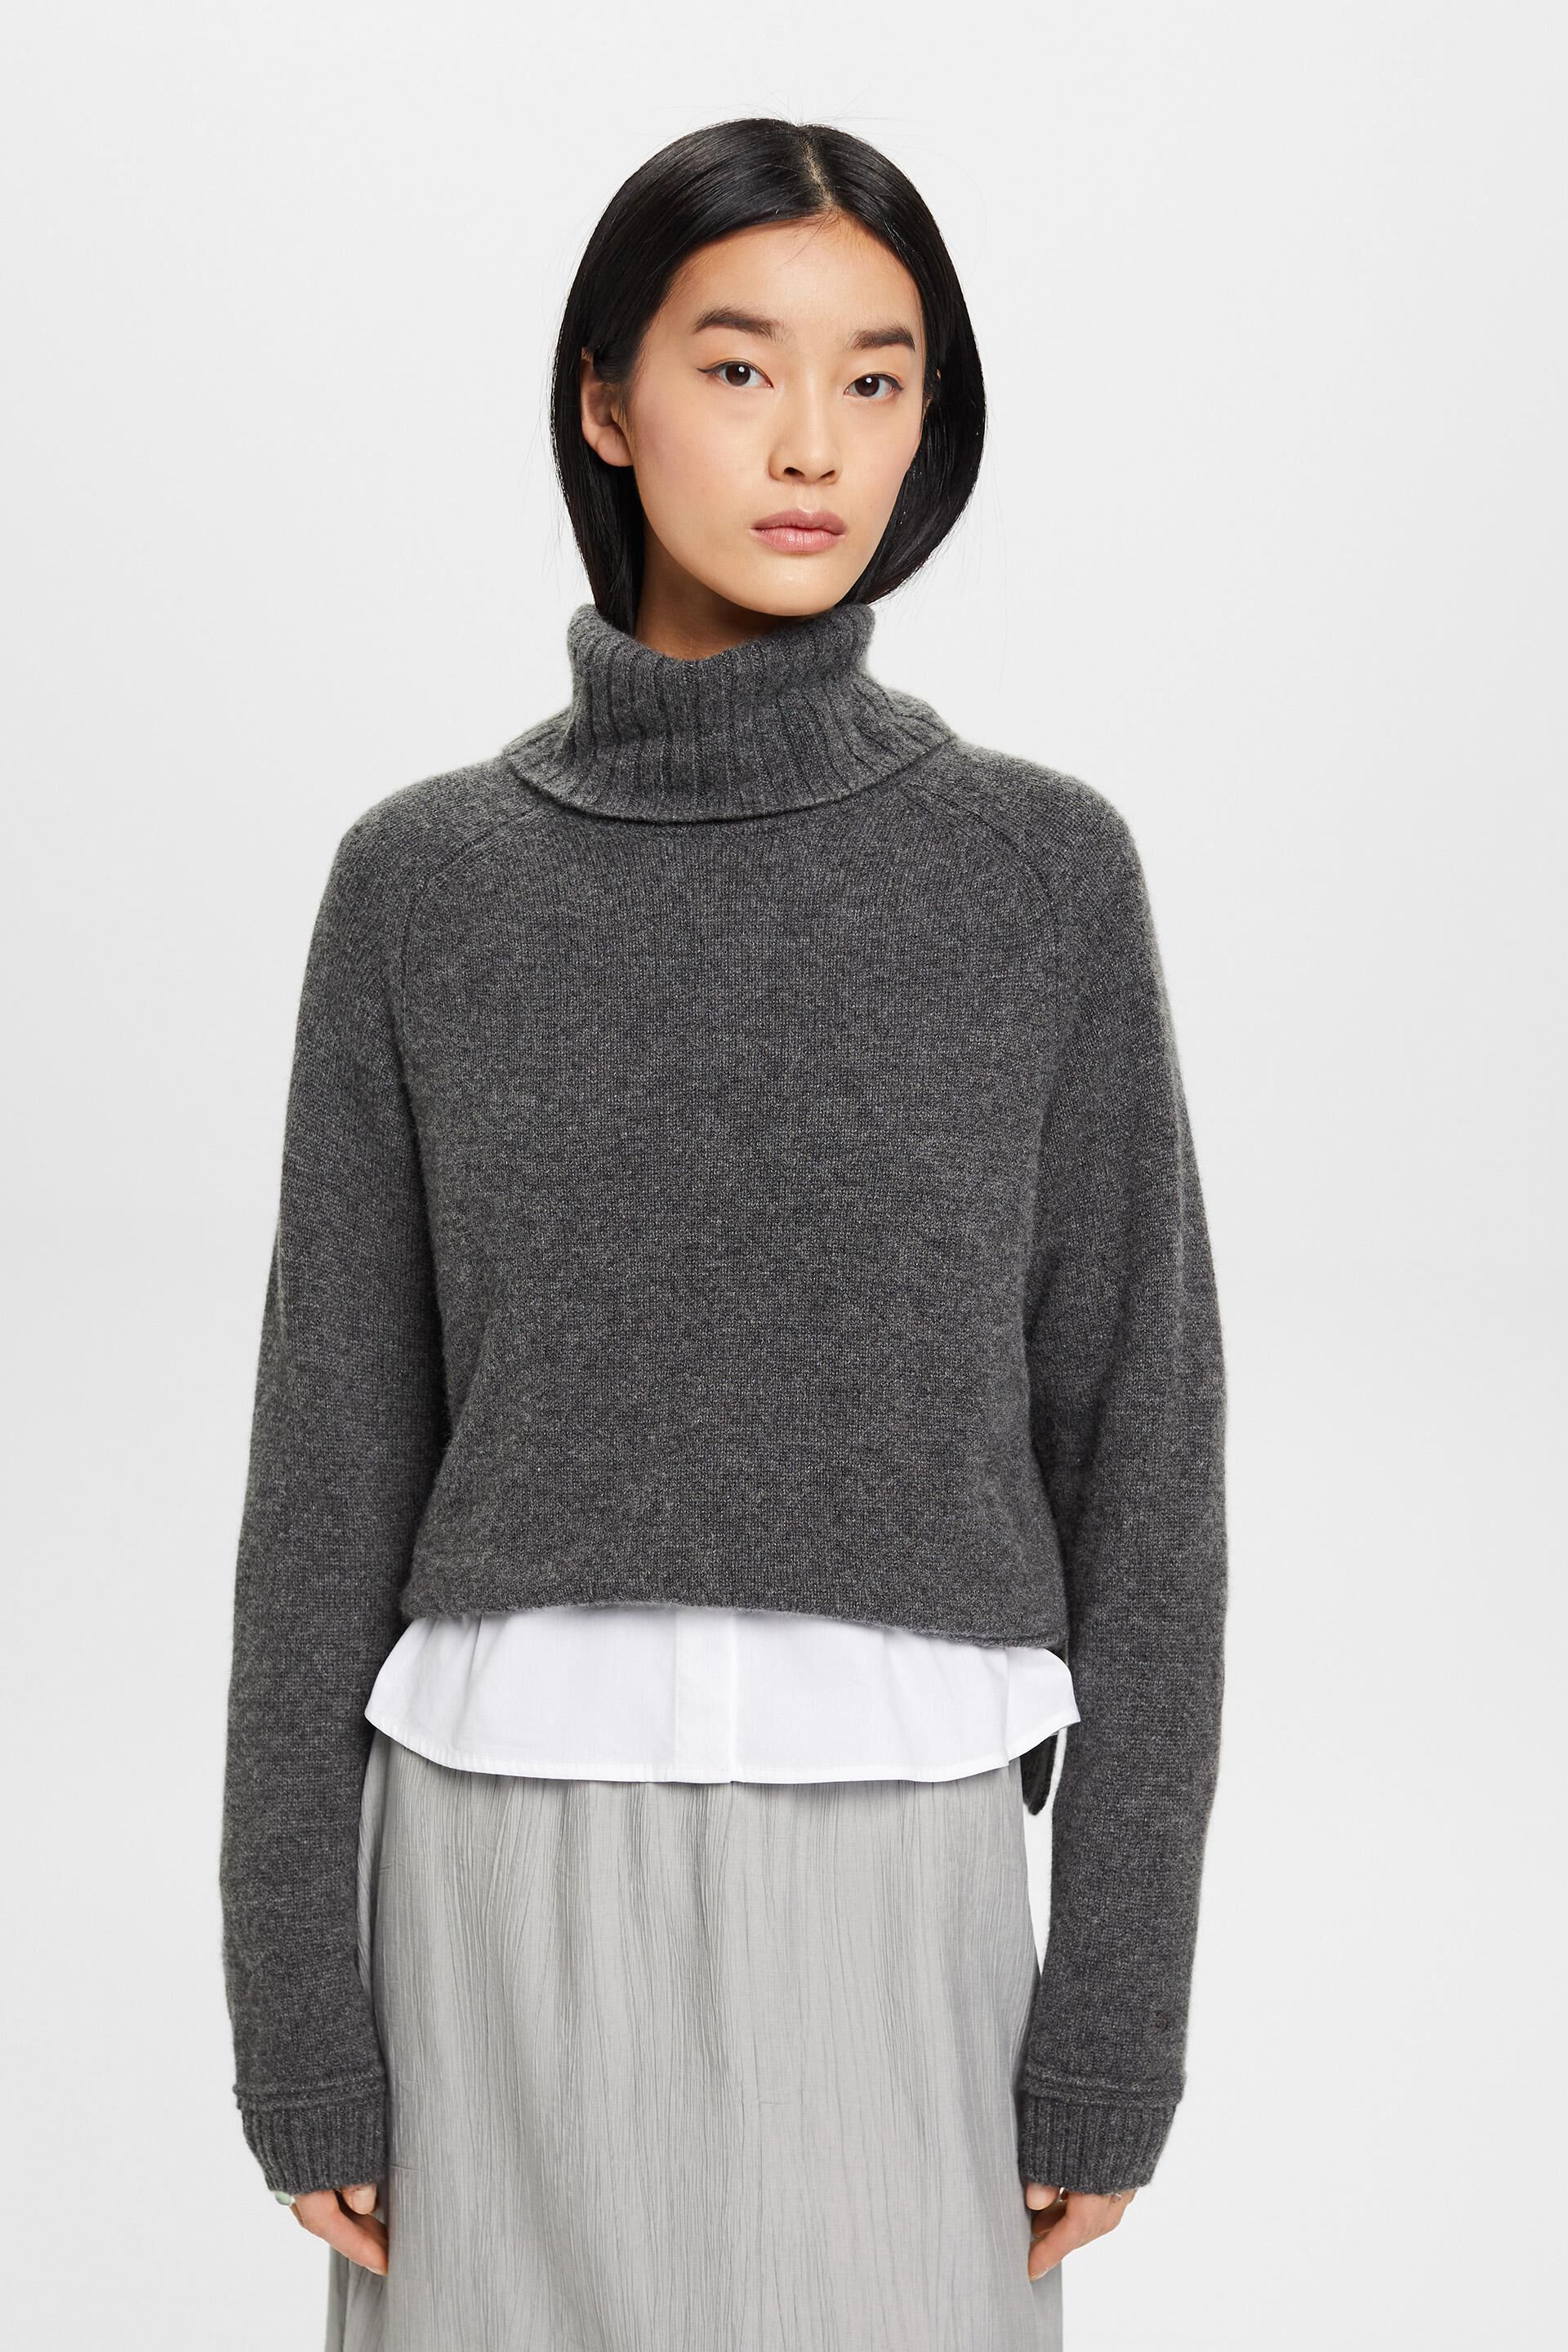 Esprit turtleneck Cashmere sweater